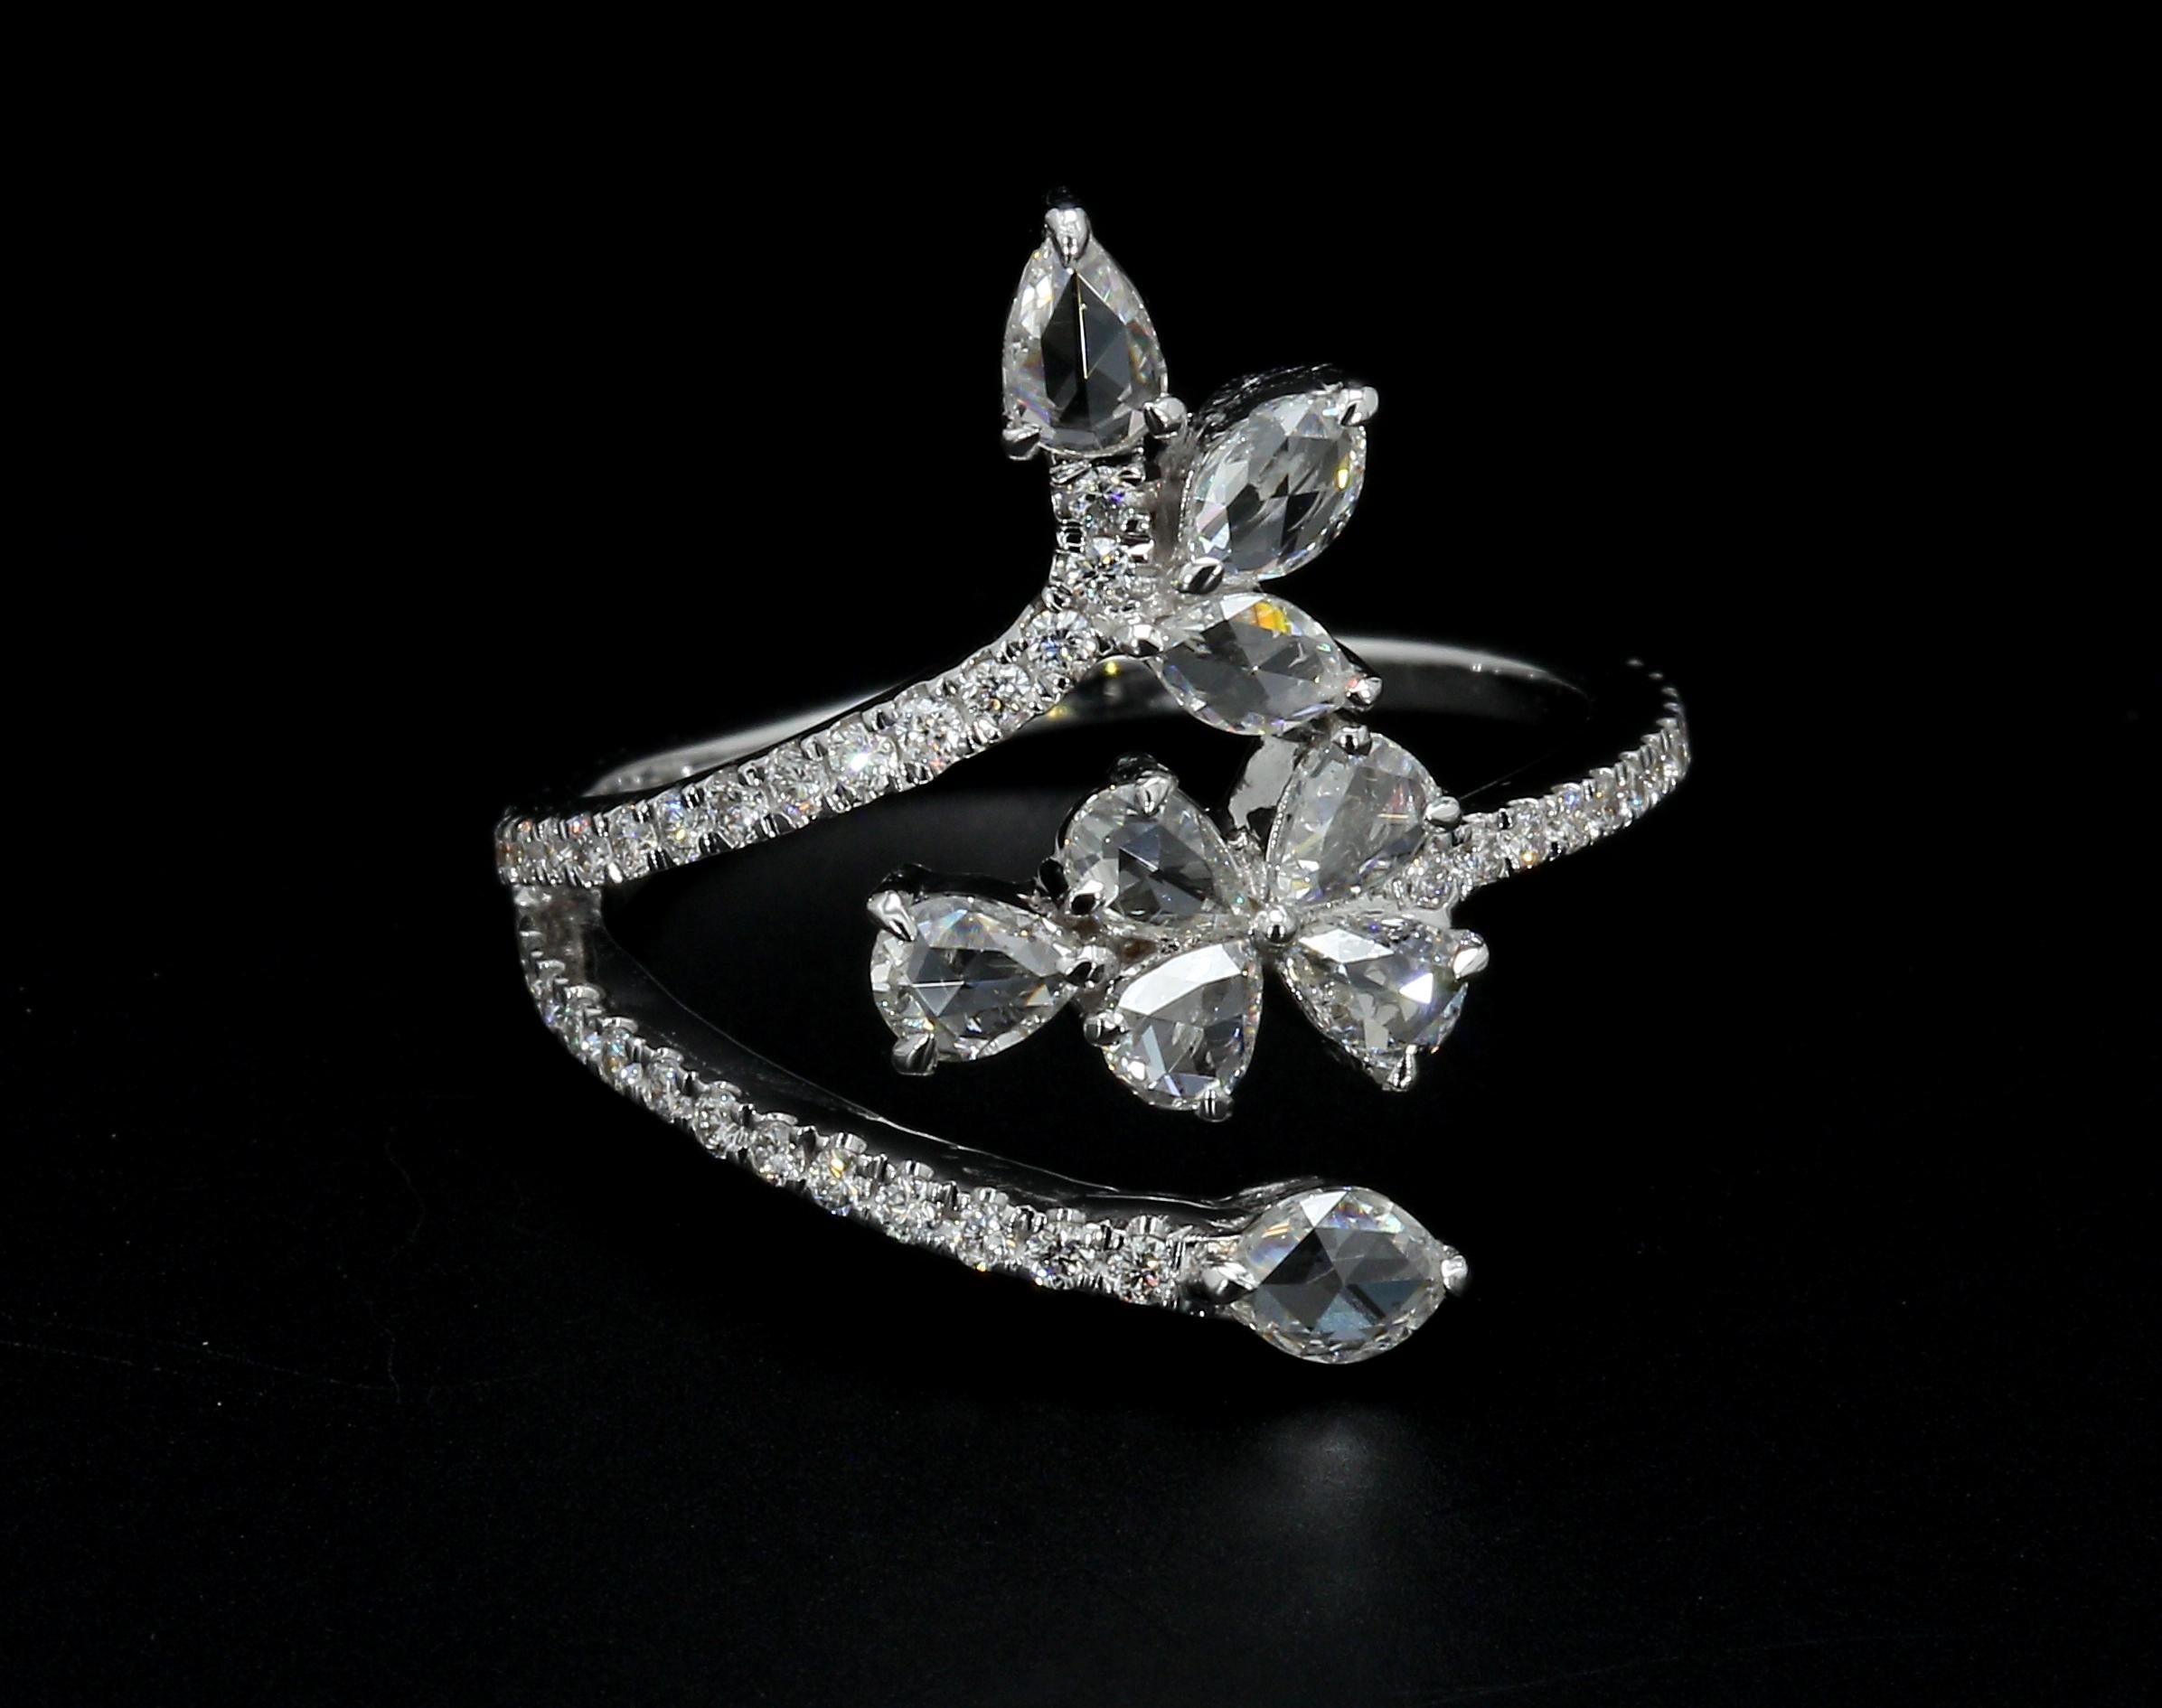 PANIM 0.91 Carat Ring with Diamond Rosecut in 18 Karat White Gold For Sale 3